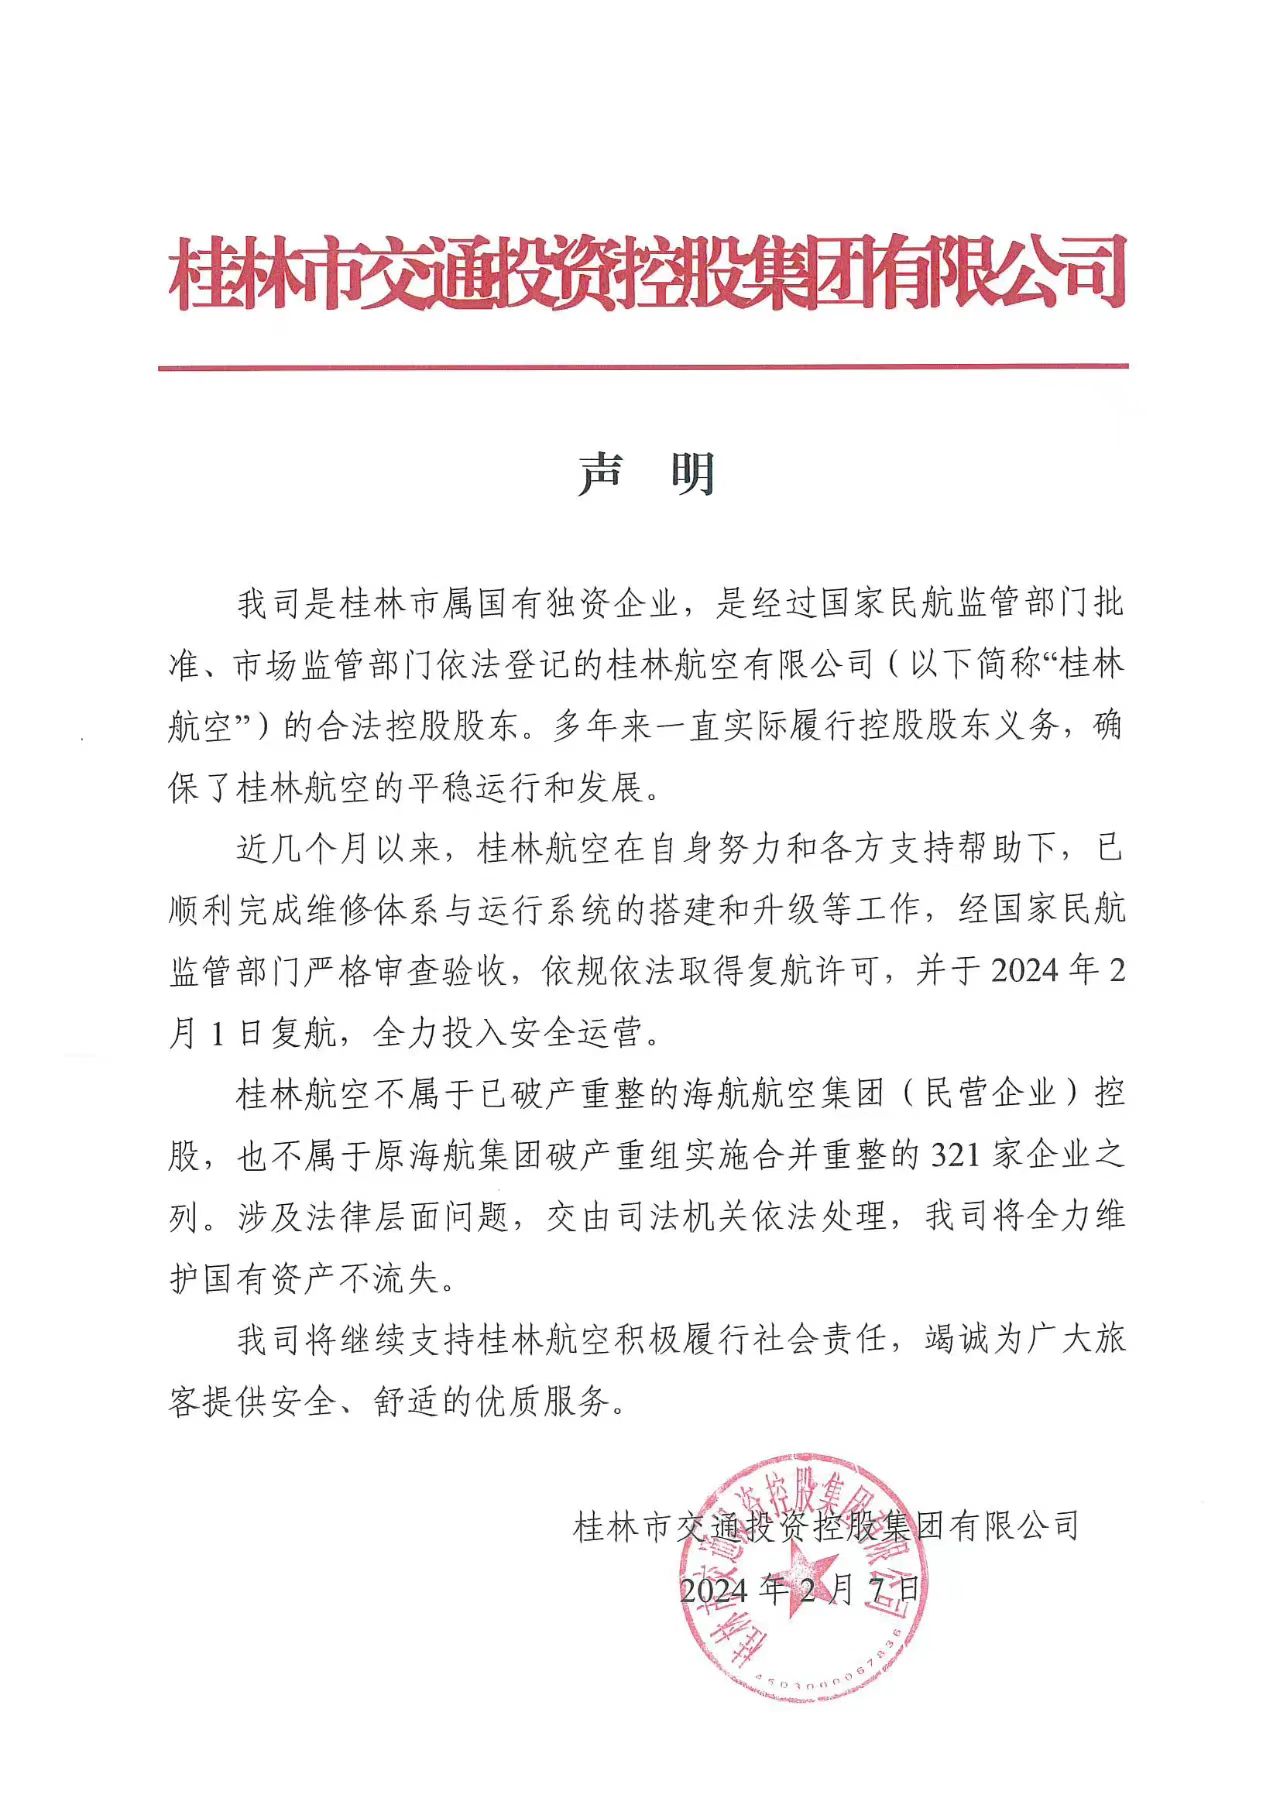 桂林航股东桂林交投发声明：桂林航不属于海航航空集团-公闻财经